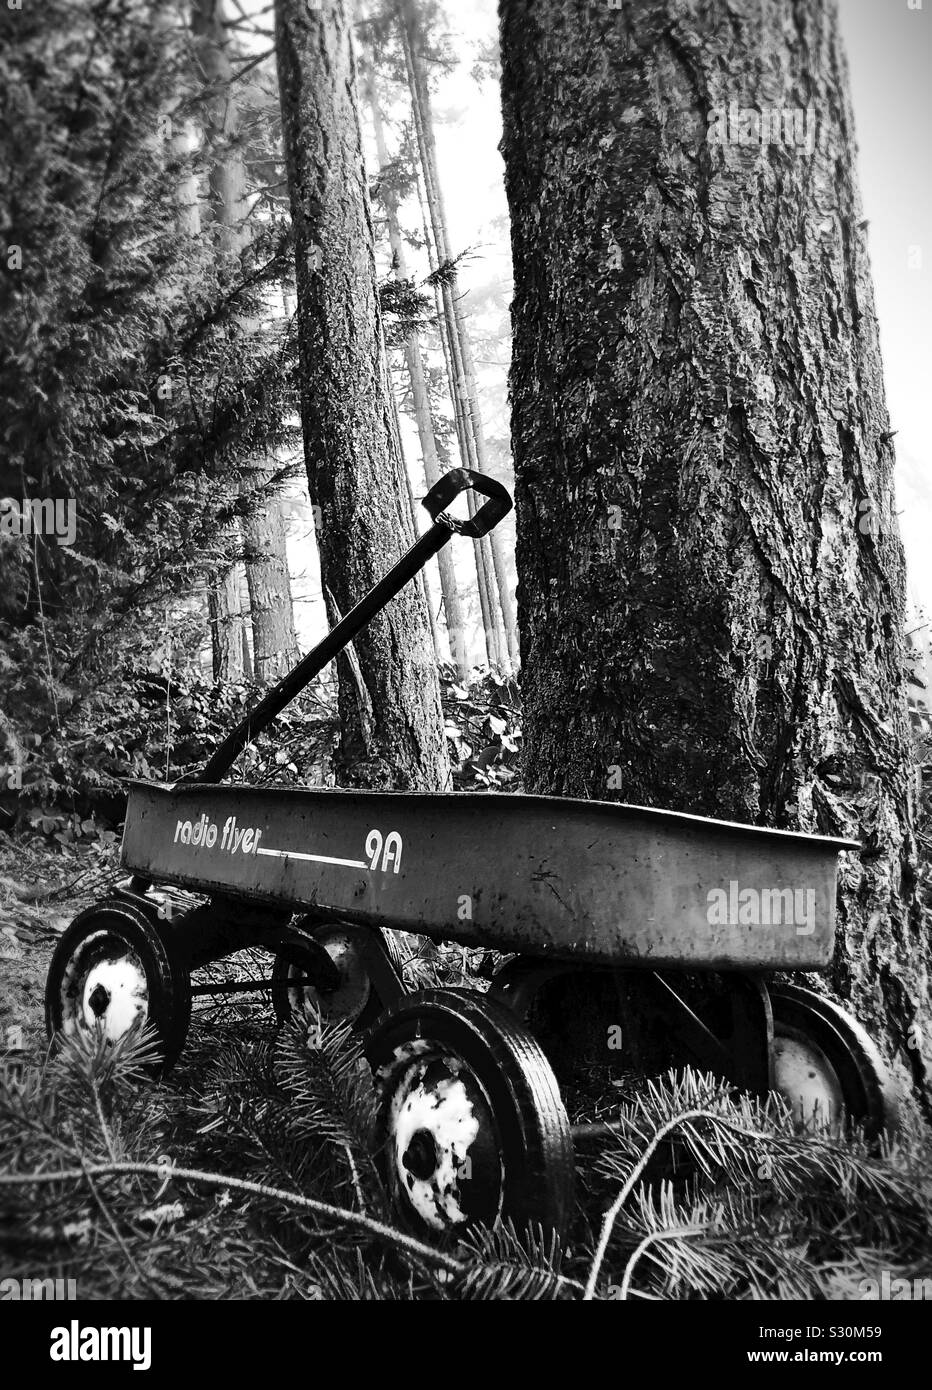 Un vieux wagon radio flyer à côté d'un arbre dans une forêt. Banque D'Images